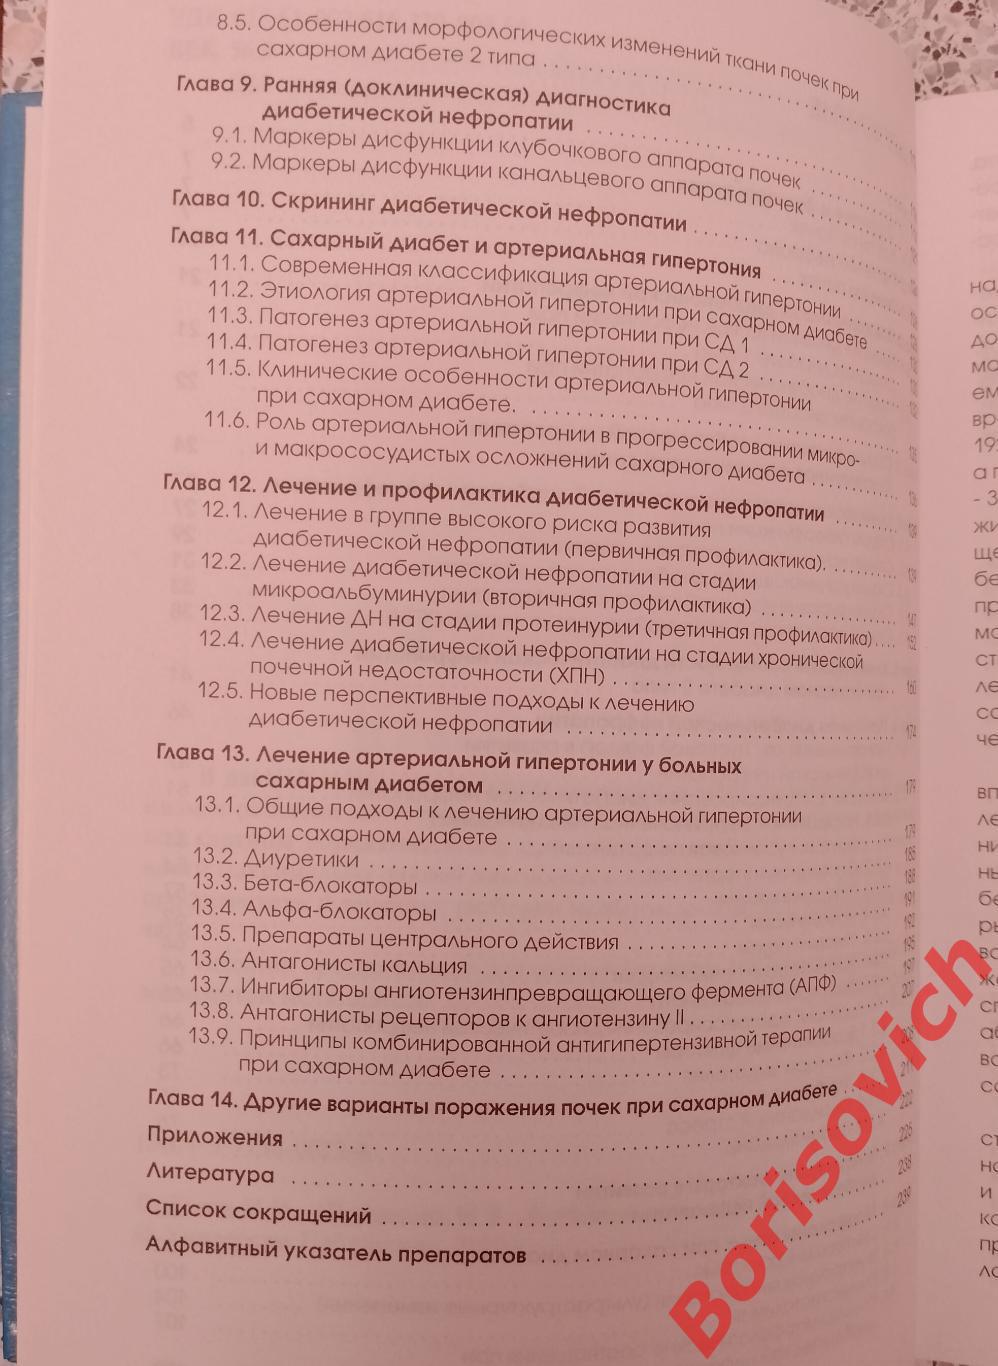 Дедов Шестакова ДИАБЕТИЧЕСКАЯ НЕФРОПАТИЯ 2000 г 240 страниц Тираж 10 000 экз 3